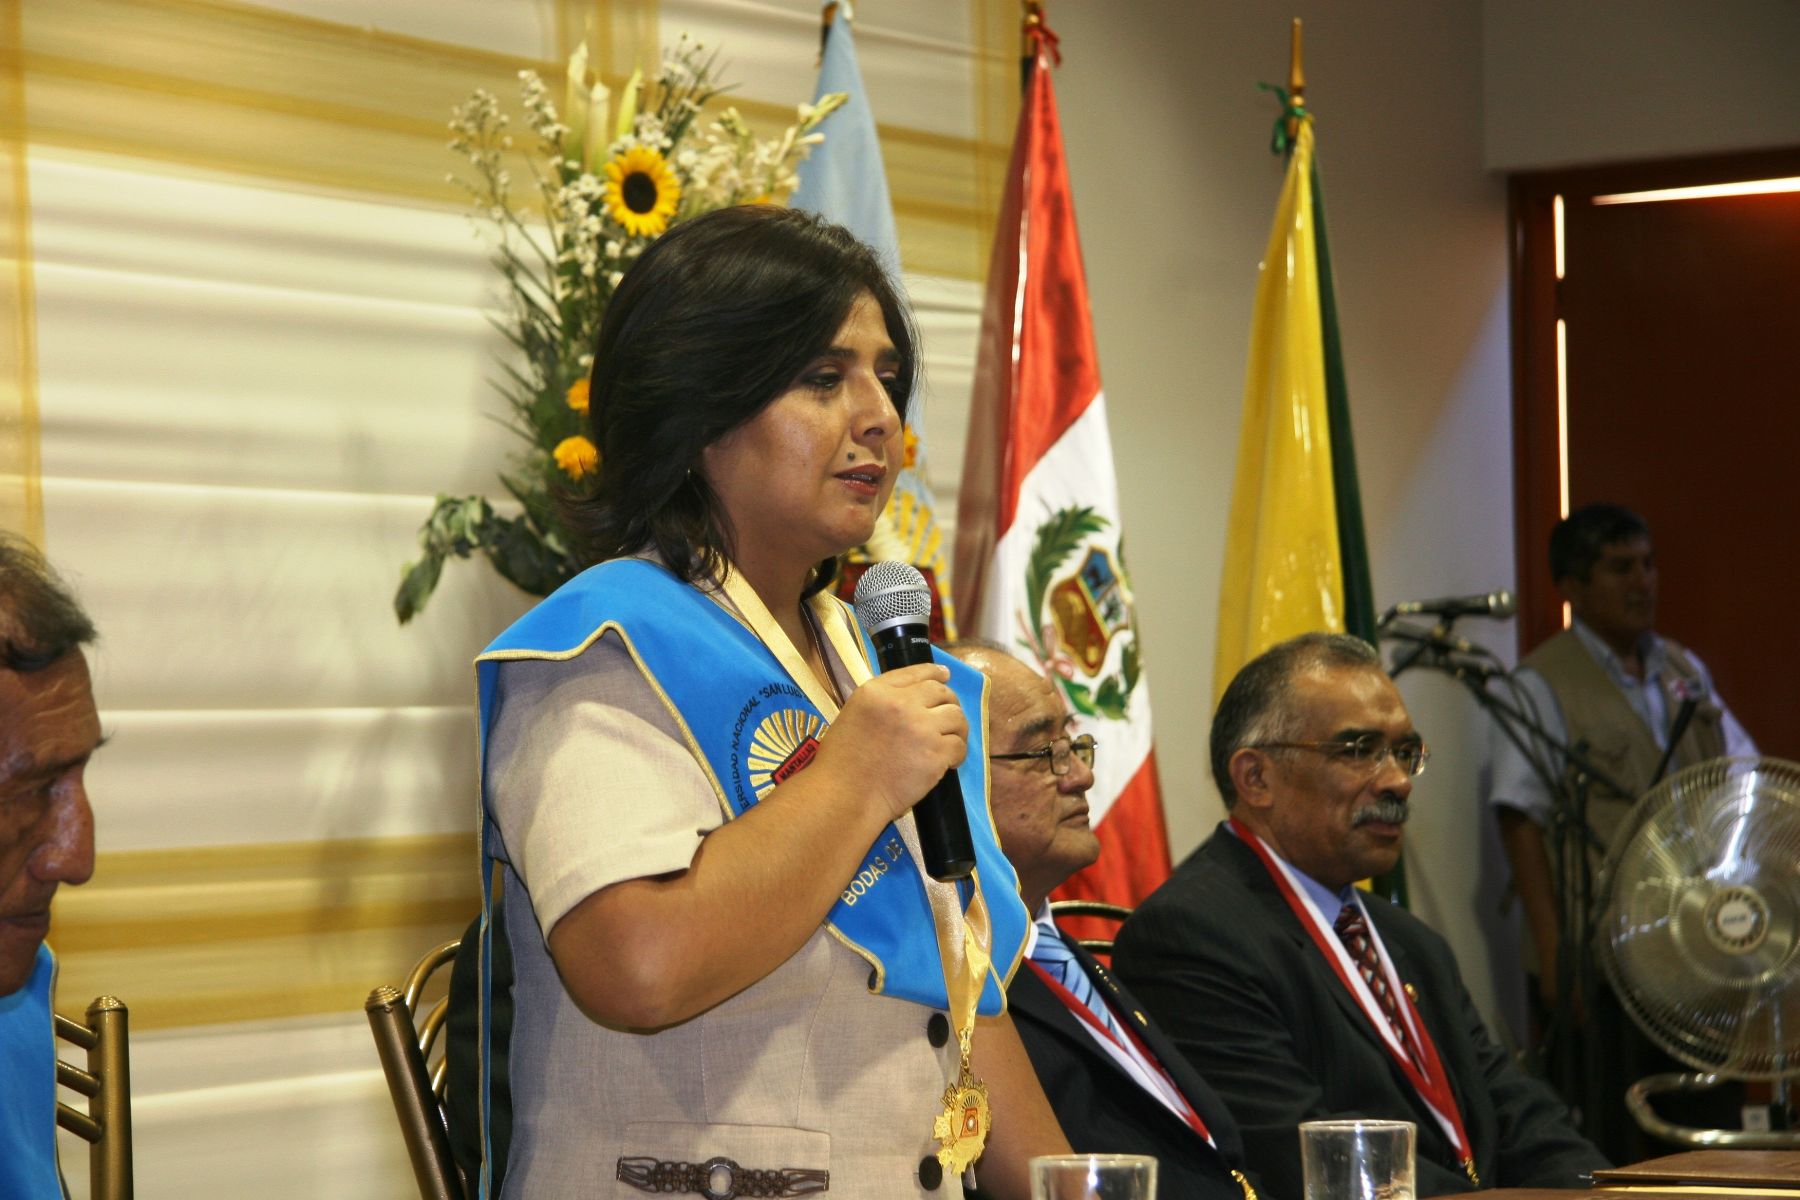 La ministra de la Mujer y Poblaciones Vulnerables, Ana Jara, fue condecorada por la Universidad Nacional San Luis de Gonzaga con la medalla "Bodas de Oro". Foto: Mimp.